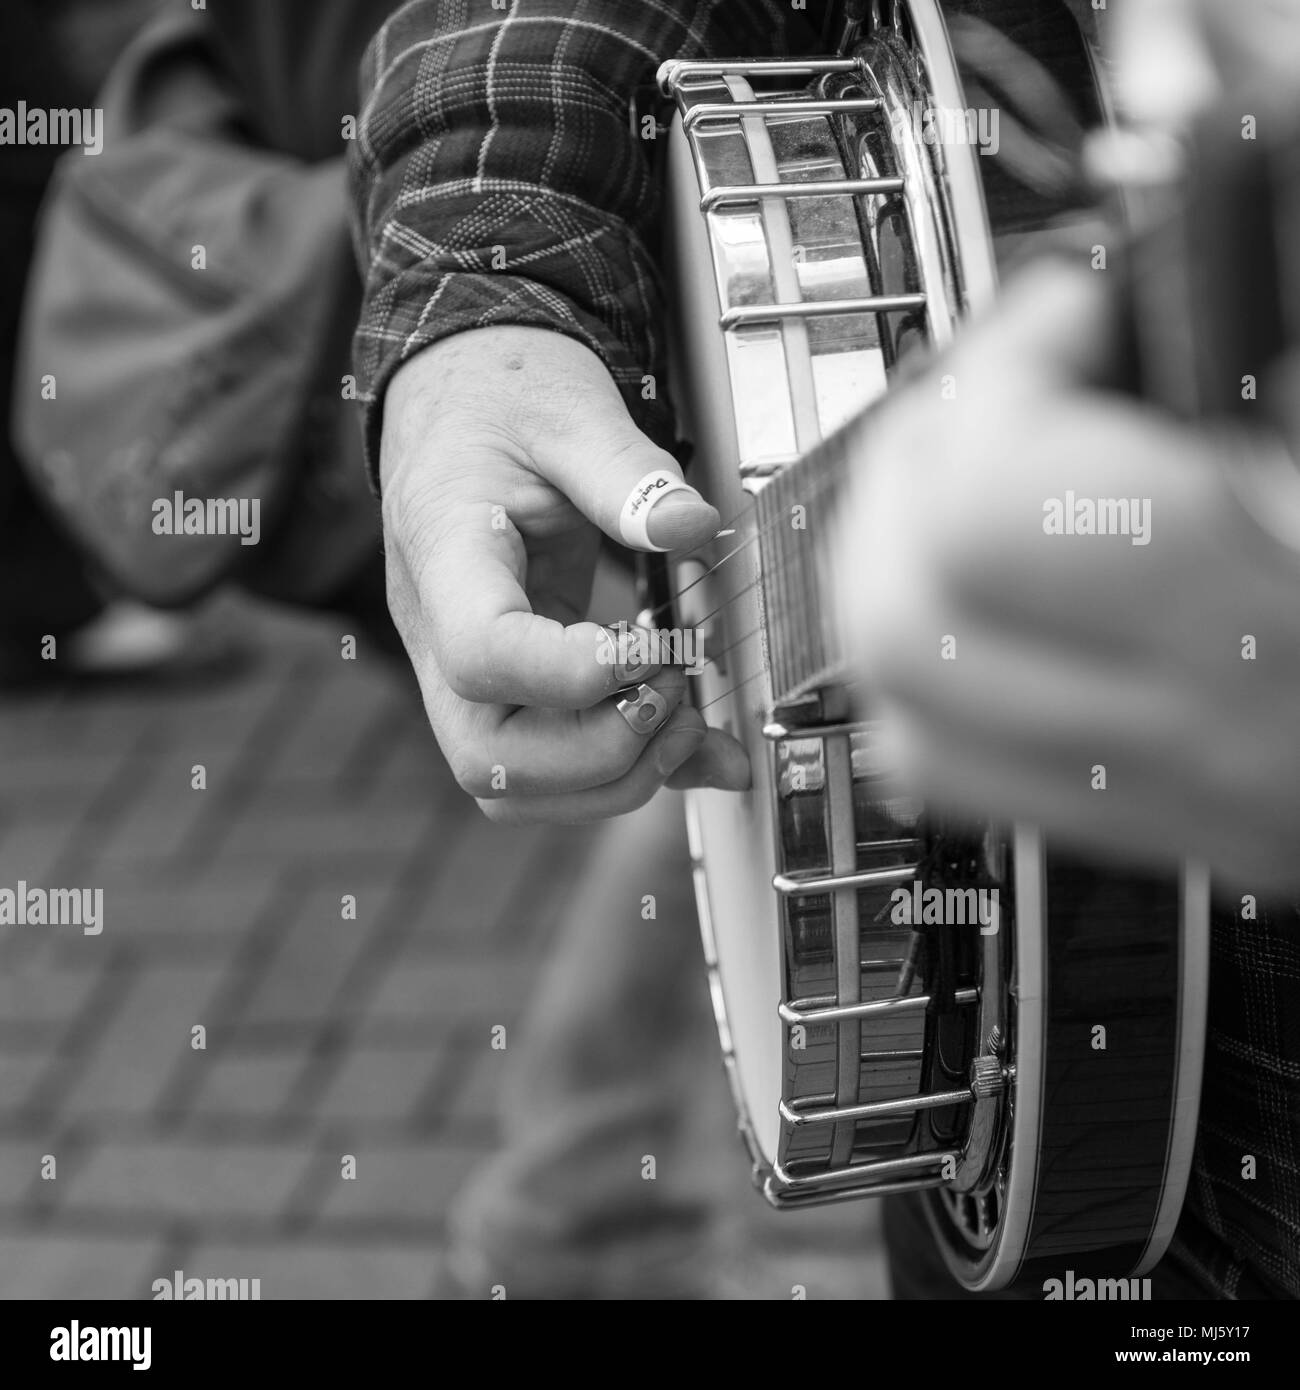 Banjo playing street performer in Banbury, UK 2017 Stock Photo